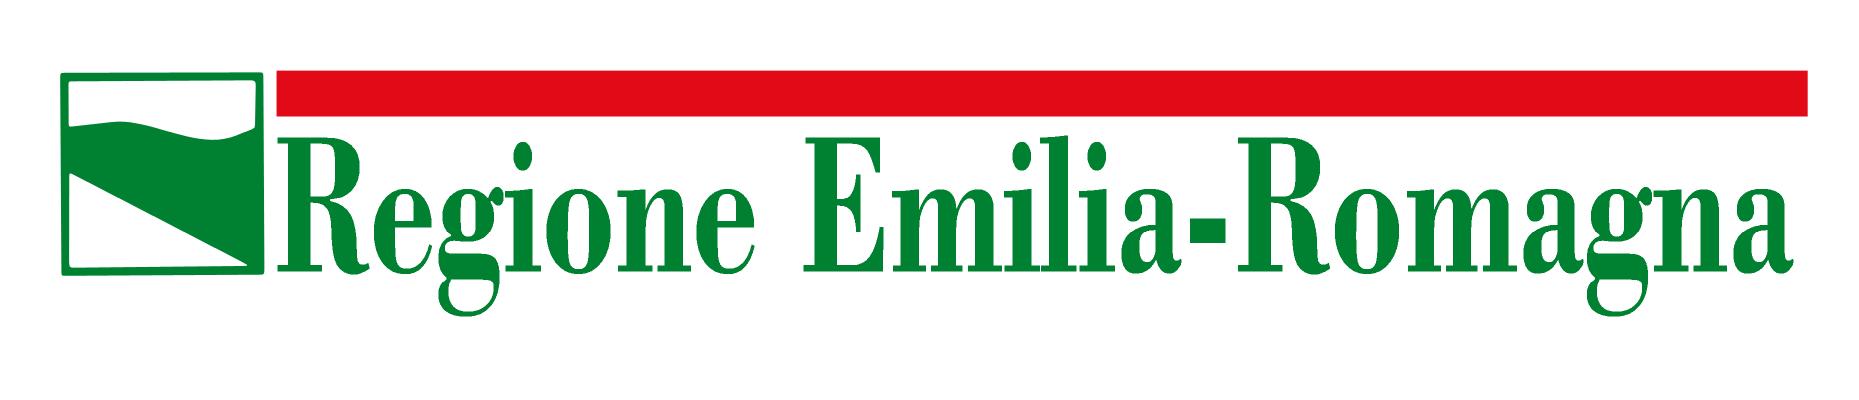 logo-regione-emilia-romagna1